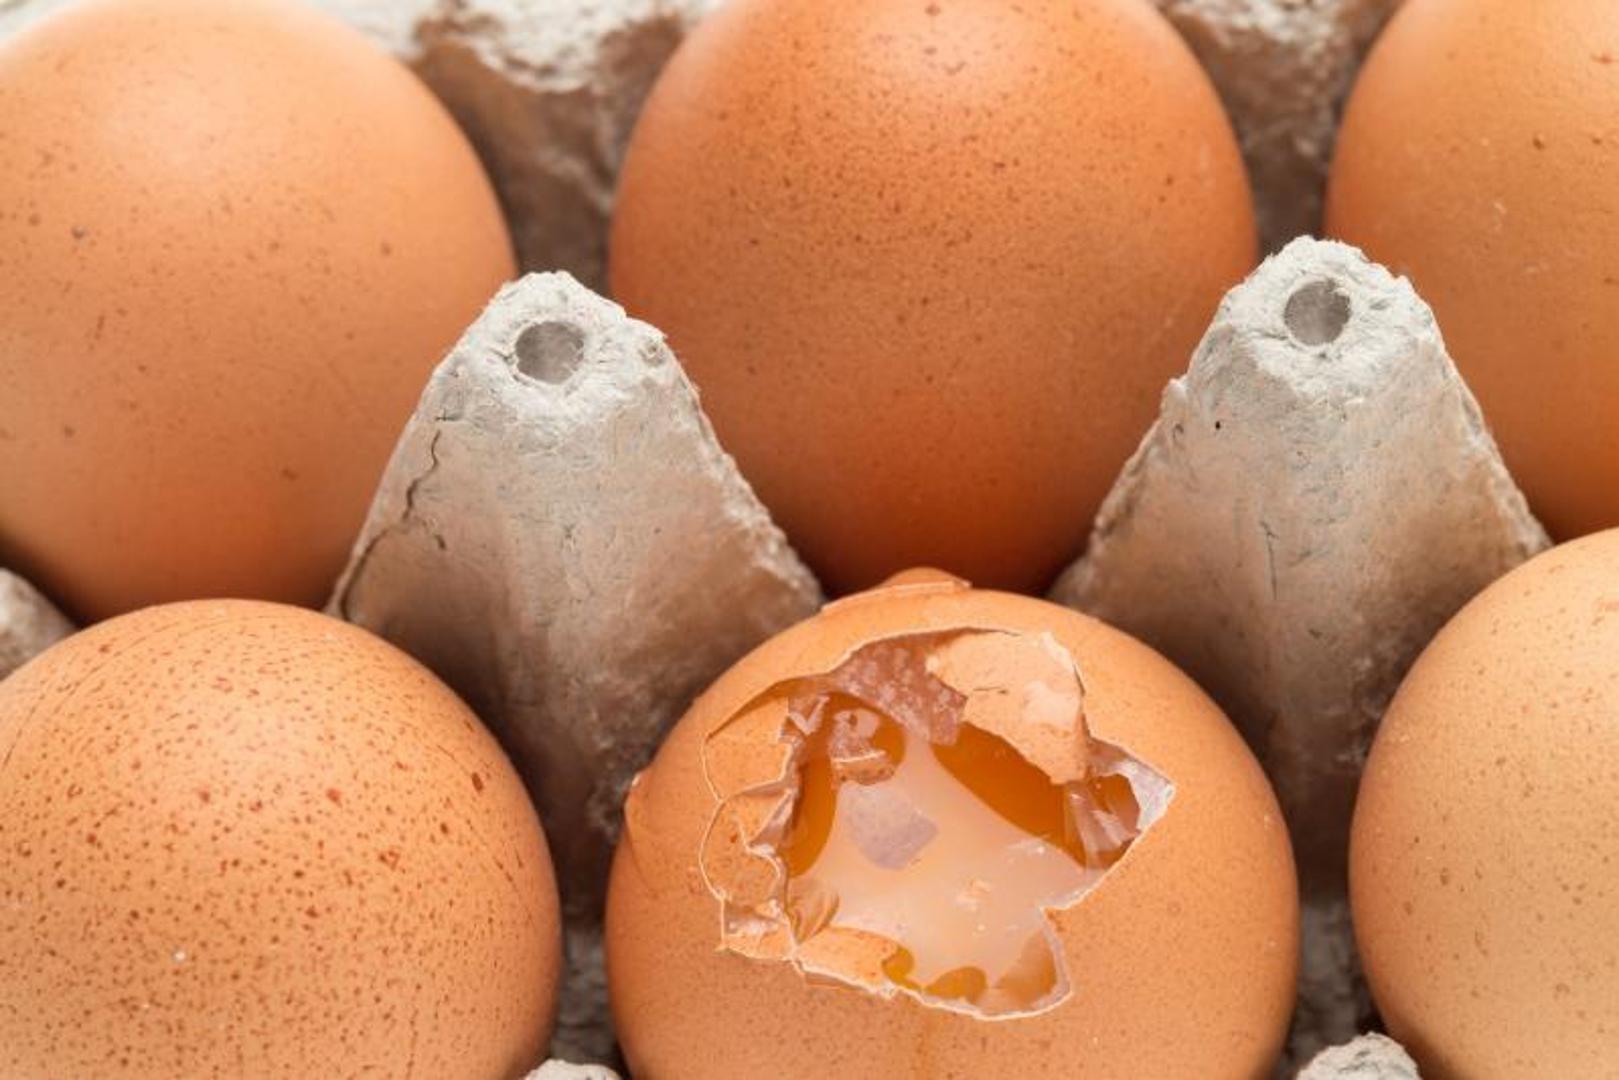 2. Nemojte koristite previše octa - mnogi misle kako kod poširanih jaja upravo ocat pomaže da se bolje i brže skuhaju. Kod većih količina bjelanjak se zgusne, a žumanjak ostane sirov


